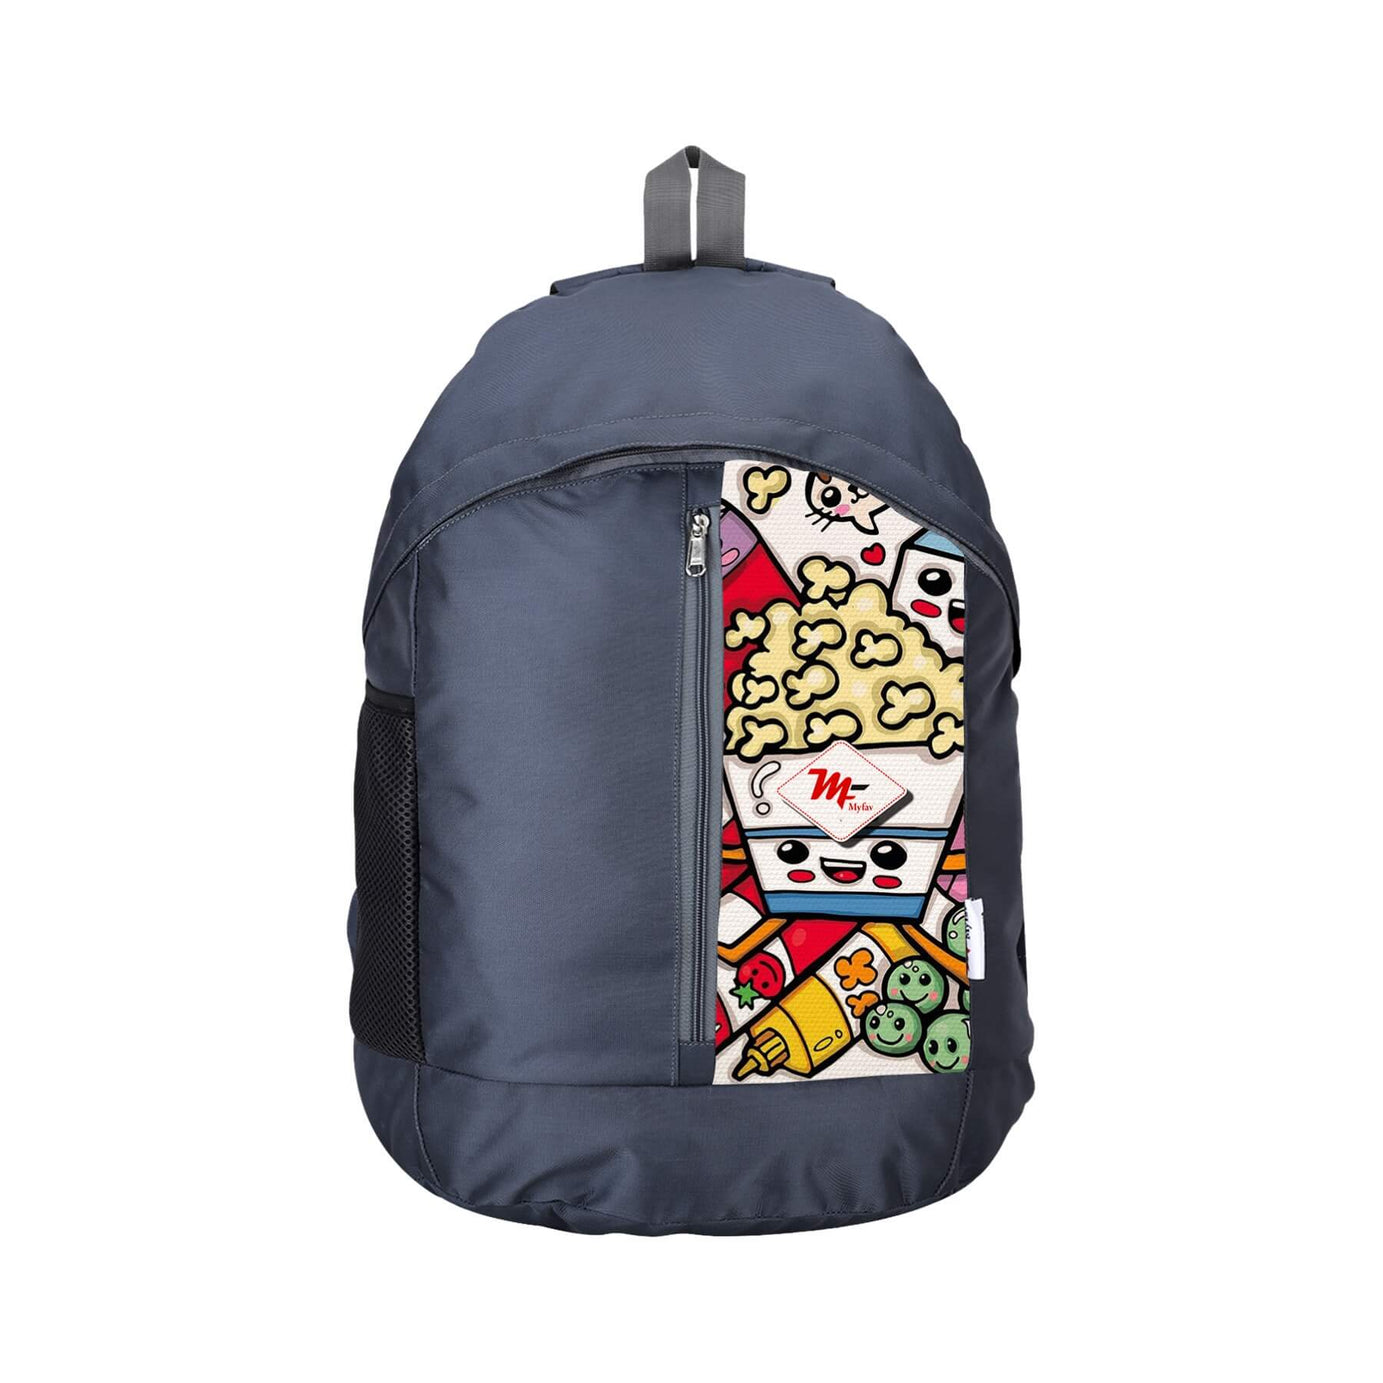 My Fav 21 L Grey Laptop Backpack for Men Women / College Bag for Boys Girls / Office Bag